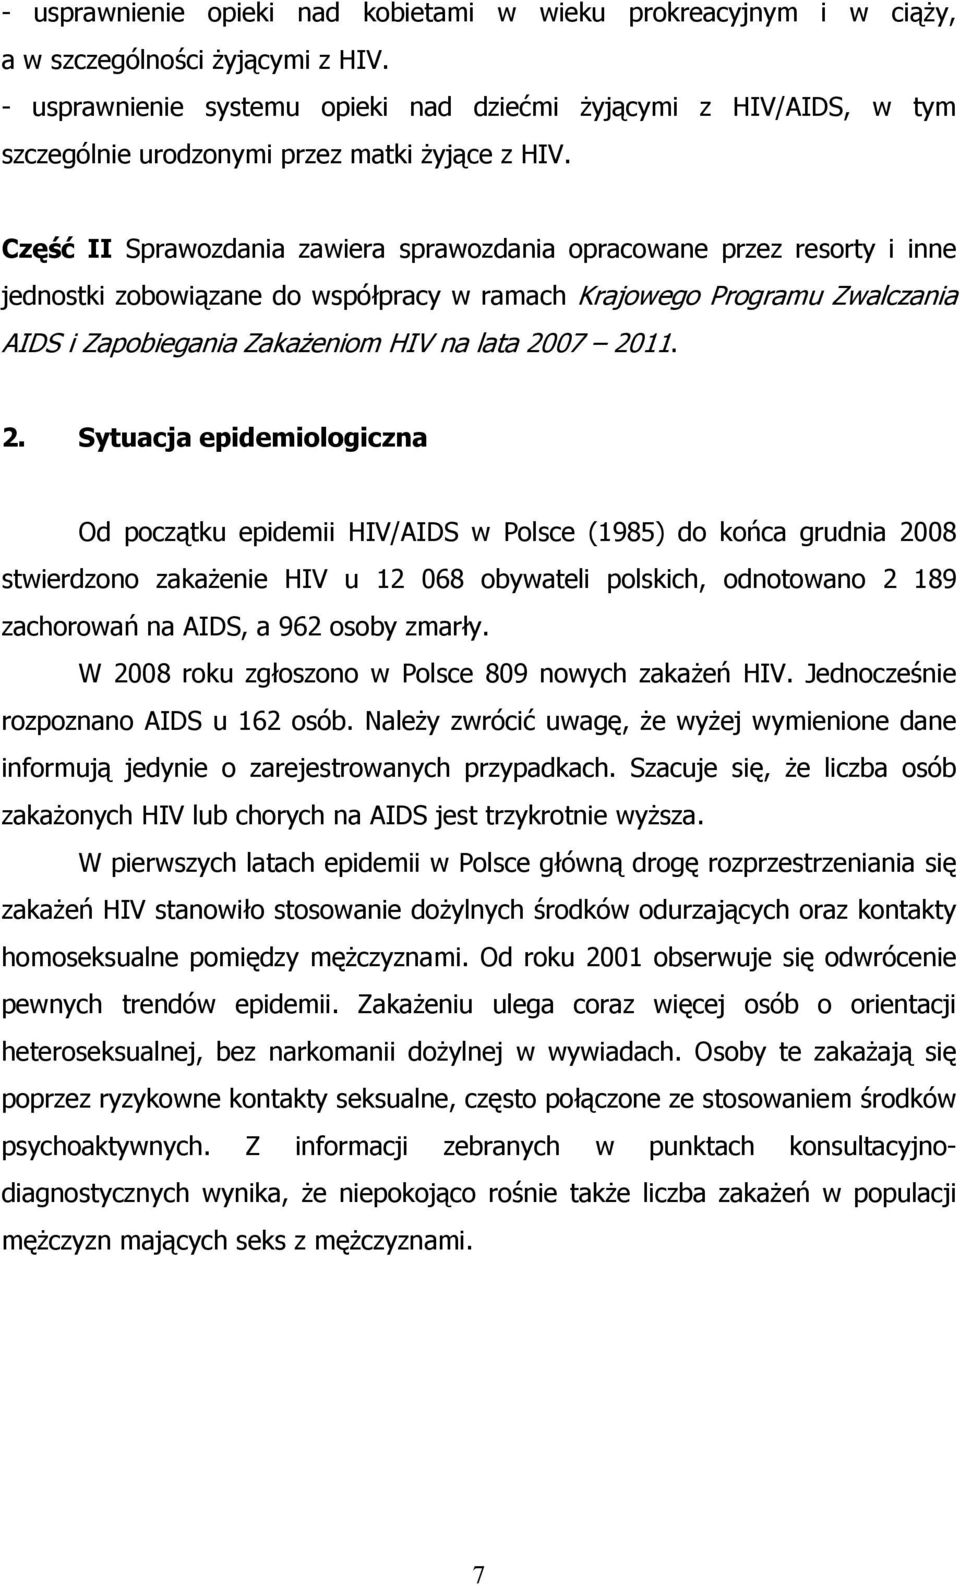 Część II Sprawozdania zawiera sprawozdania opracowane przez resorty i inne jednostki zobowiązane do współpracy w ramach Krajowego Programu Zwalczania AIDS i Zapobiegania Zakażeniom HIV na lata 2007